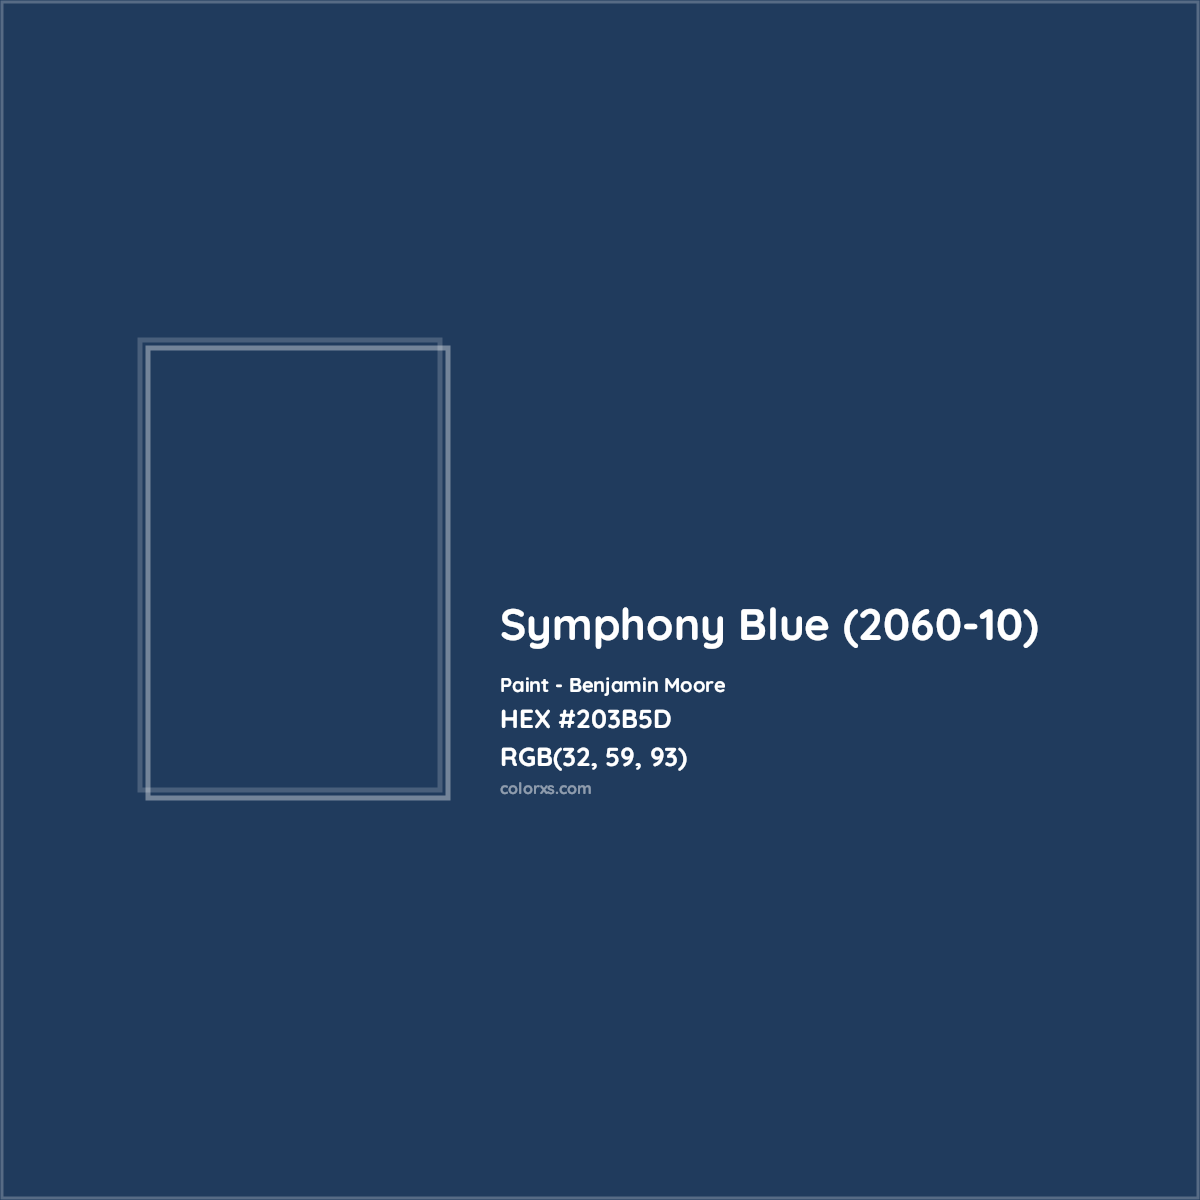 HEX #203B5D Symphony Blue (2060-10) Paint Benjamin Moore - Color Code